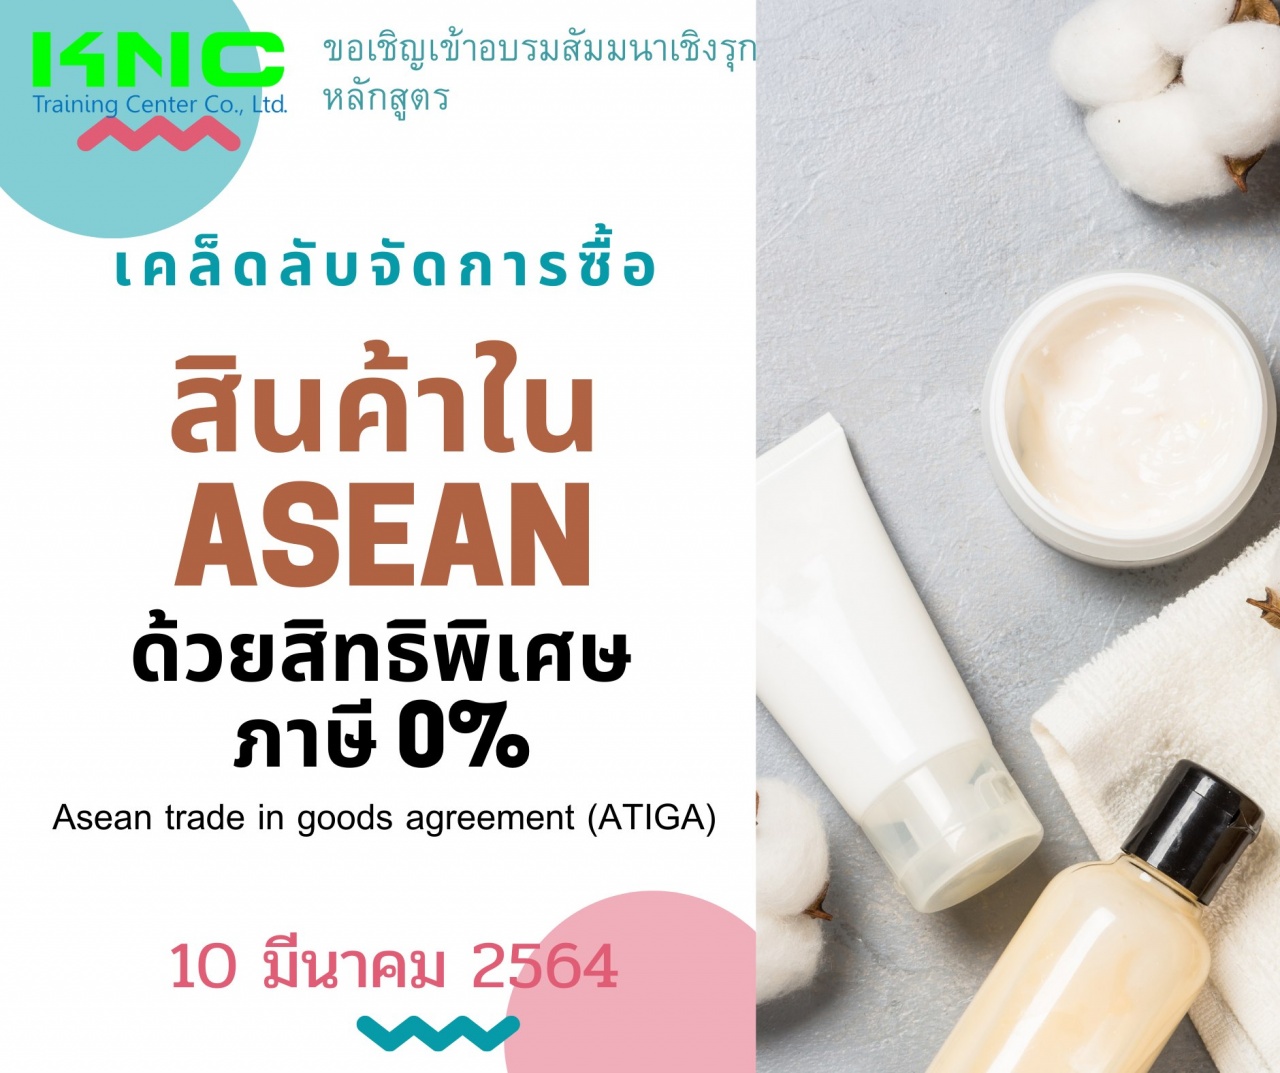 เคล็ดลับจัดการซื้อสินค้าใน ASEAN  ด้วยสิทธิพิเศษ ภาษี 0% Asean trade in goods agreement (ATIGA)